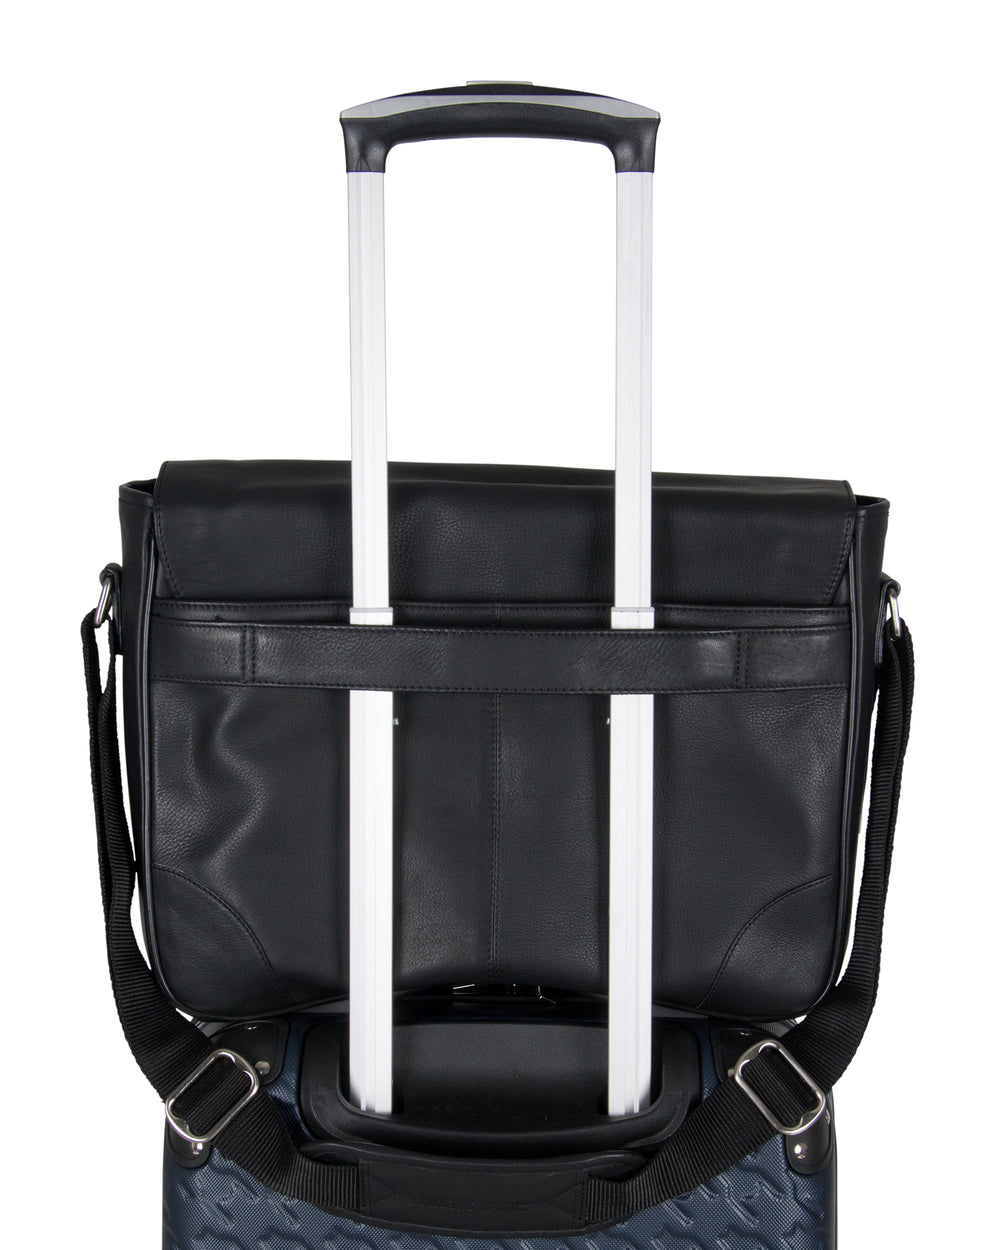 Karino Leather 15 Computer / Travel Messenger Bag - Brown - Ben Sherman